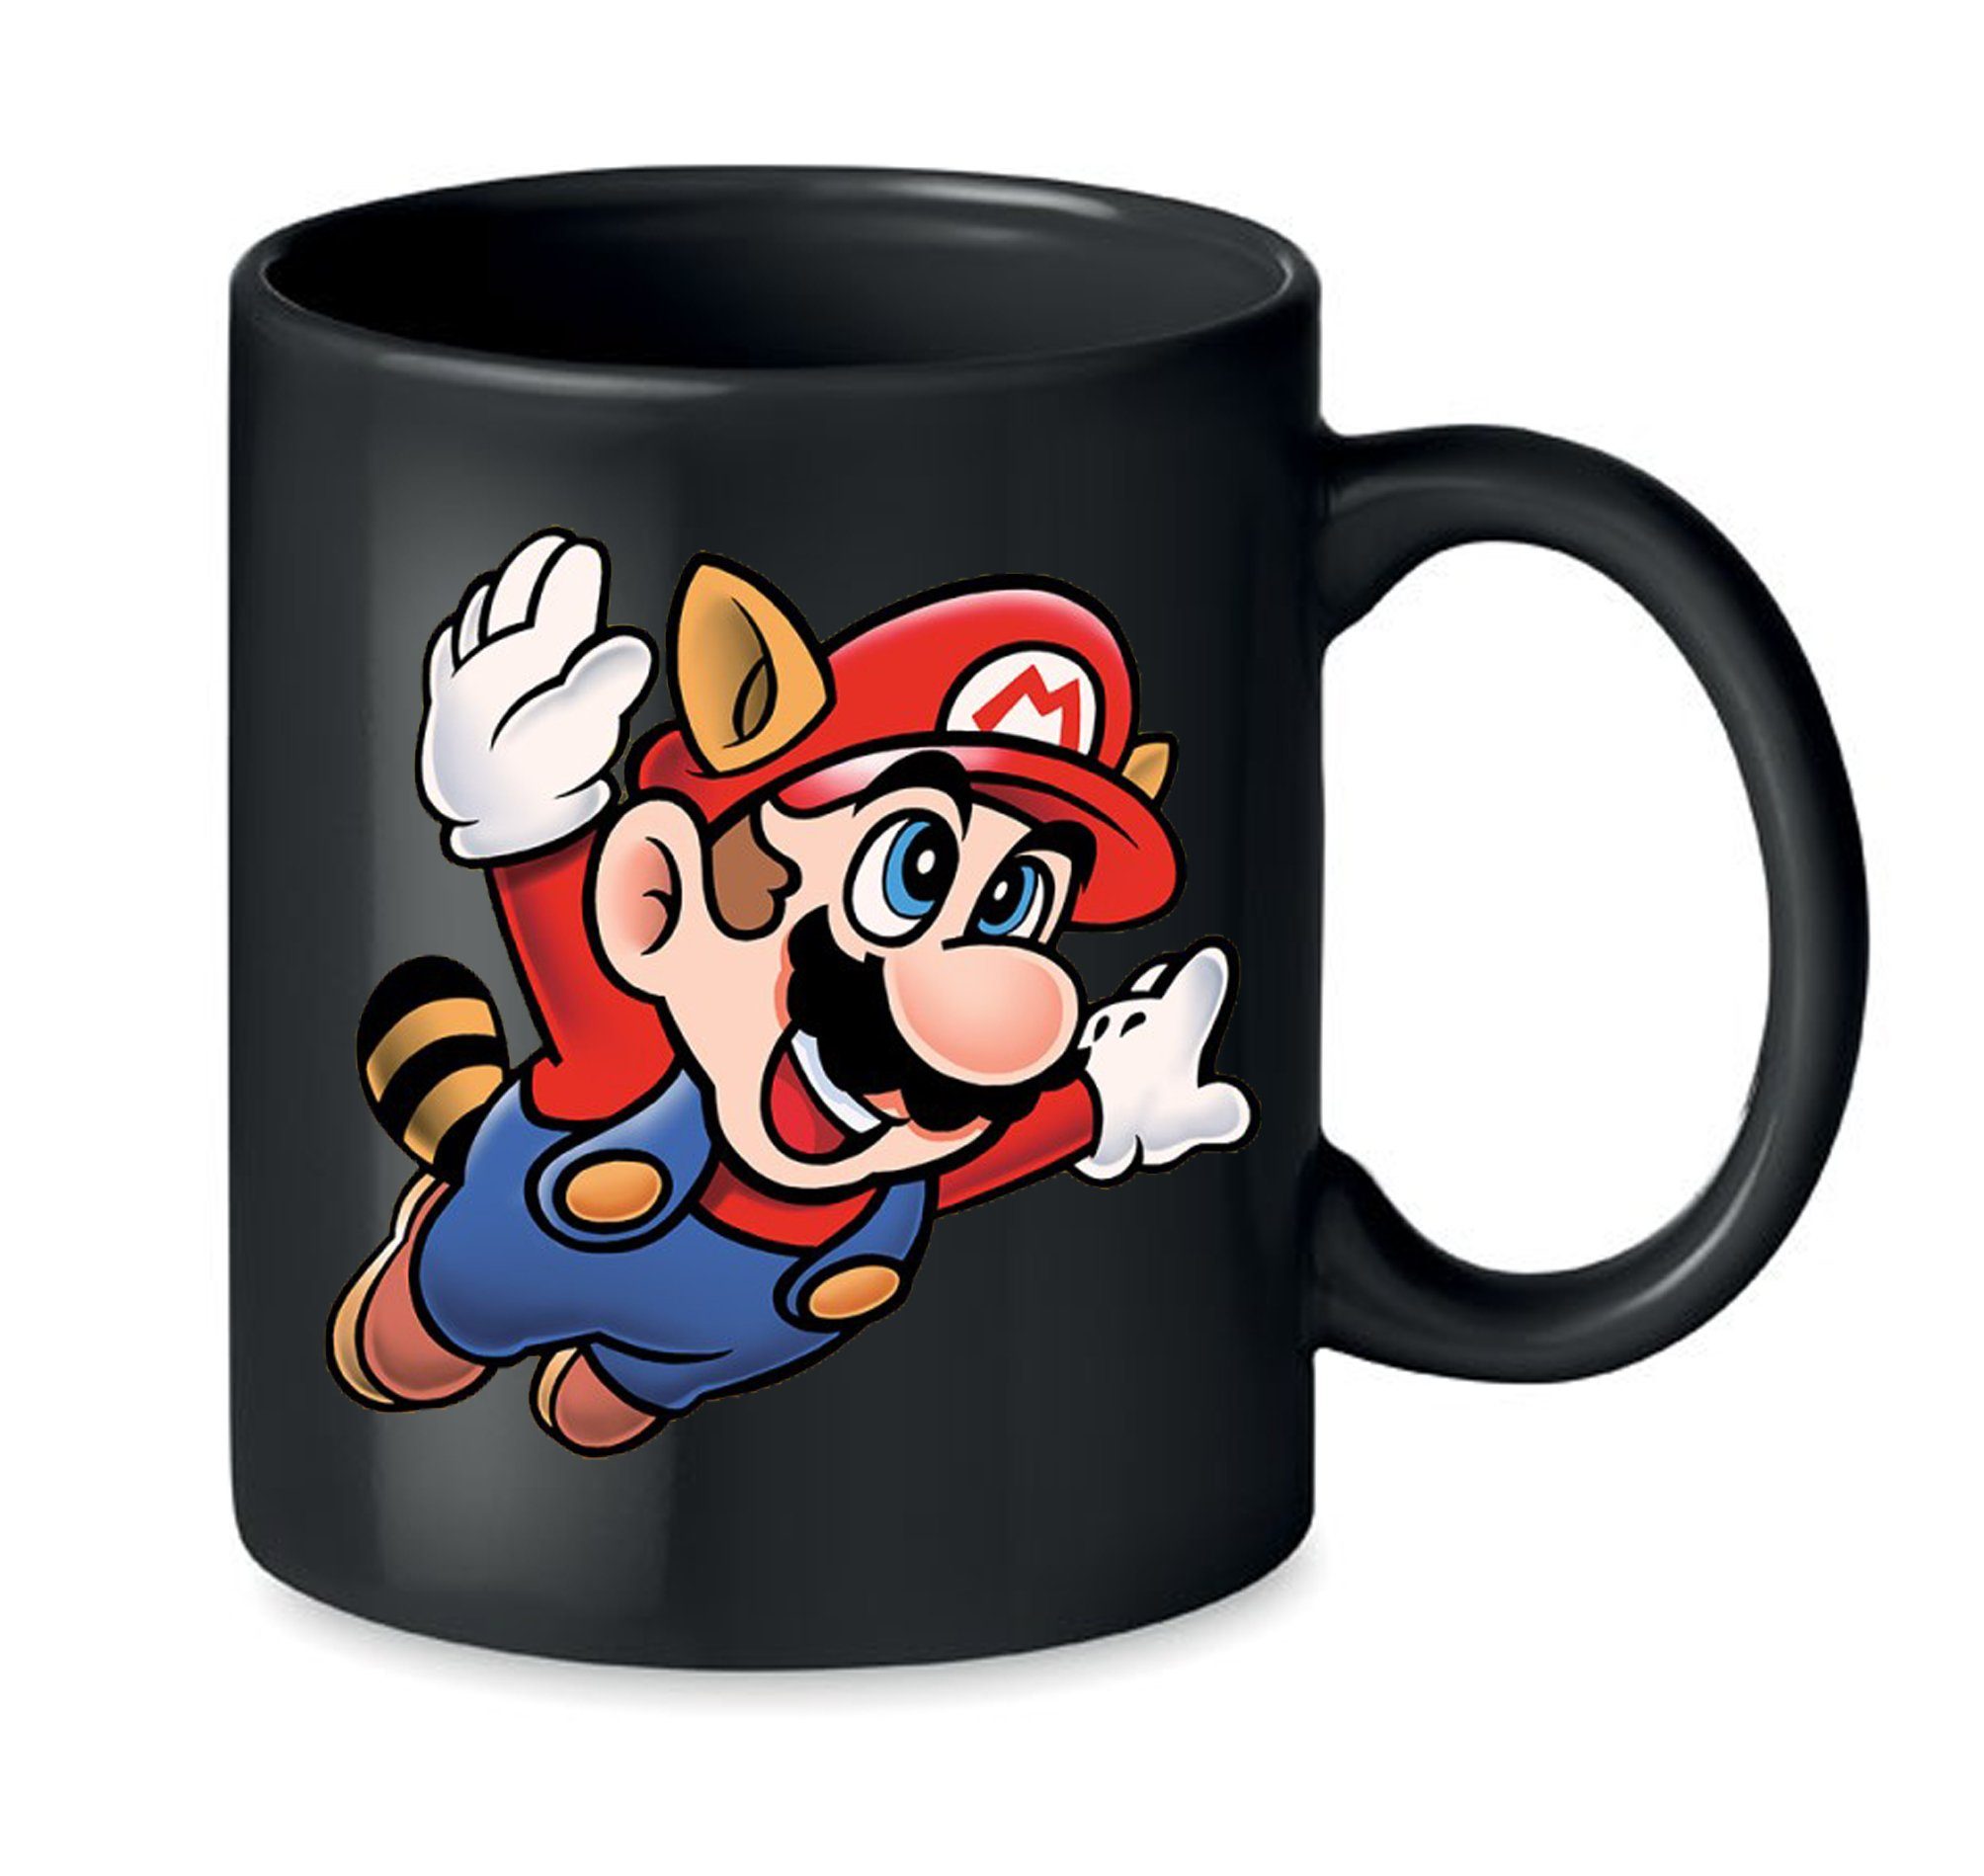 Blondie & Brownie Tasse Super Mario 3 Fligh Retro Gamer Gaming Nerd Konsole, Keramik